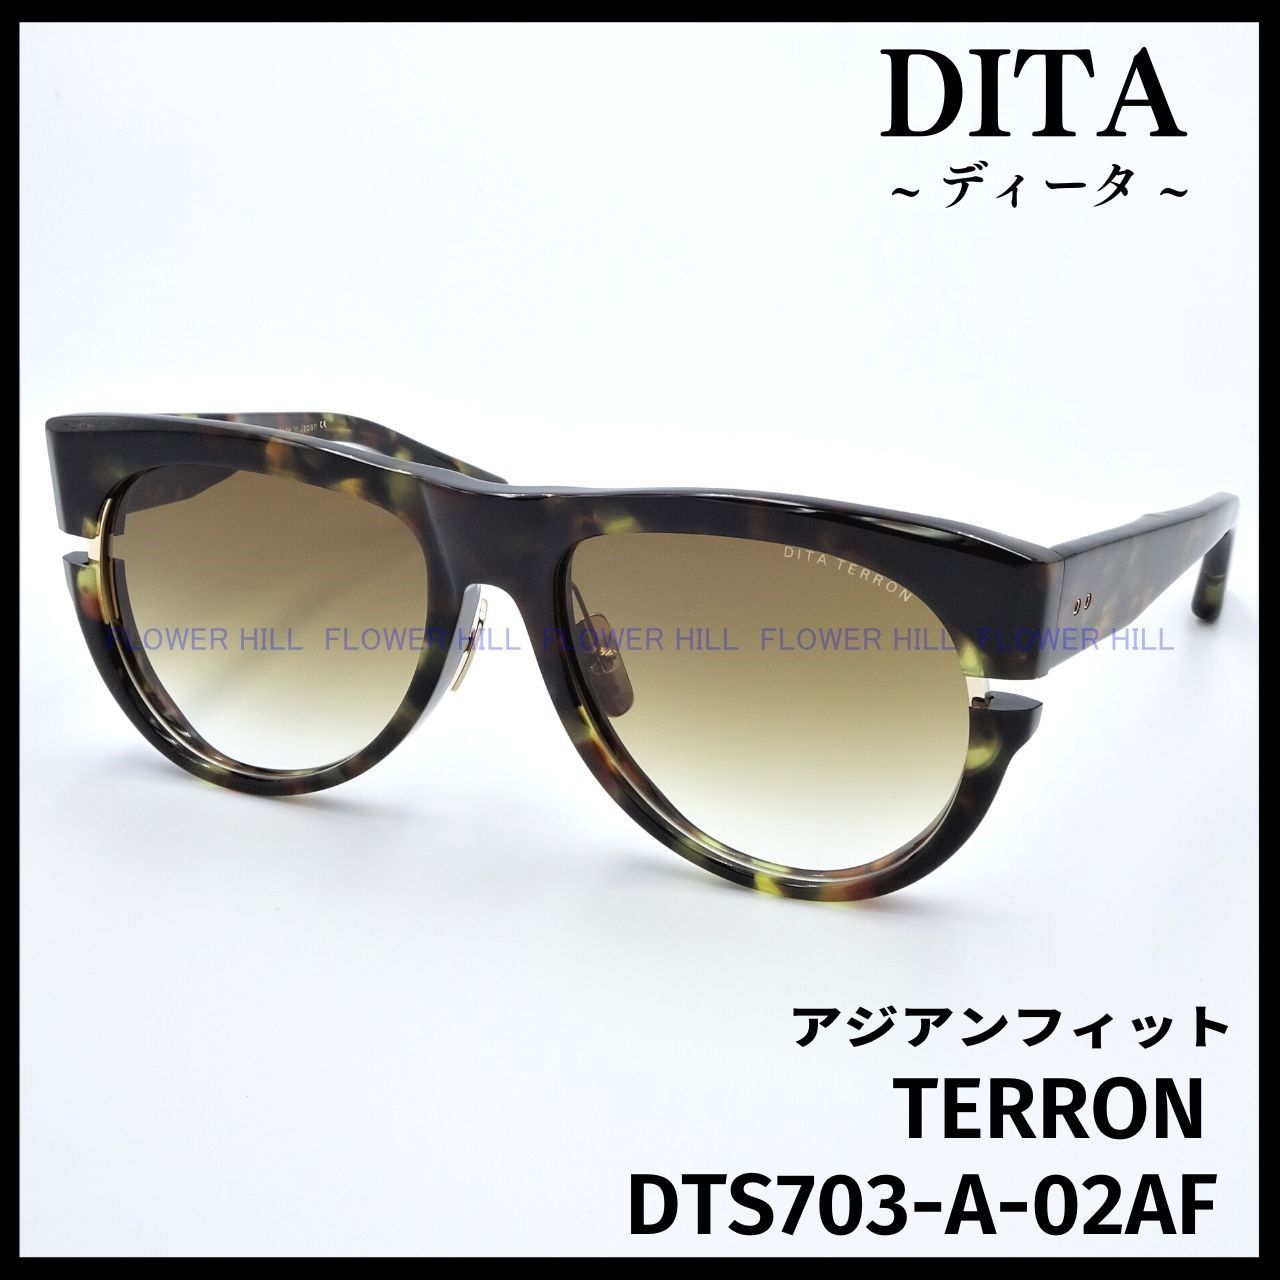 DITA ディータ サングラス TERRON DTS703-A-02AF ハバナ/ゴールド アビエイター 日本製 メンズ レディース